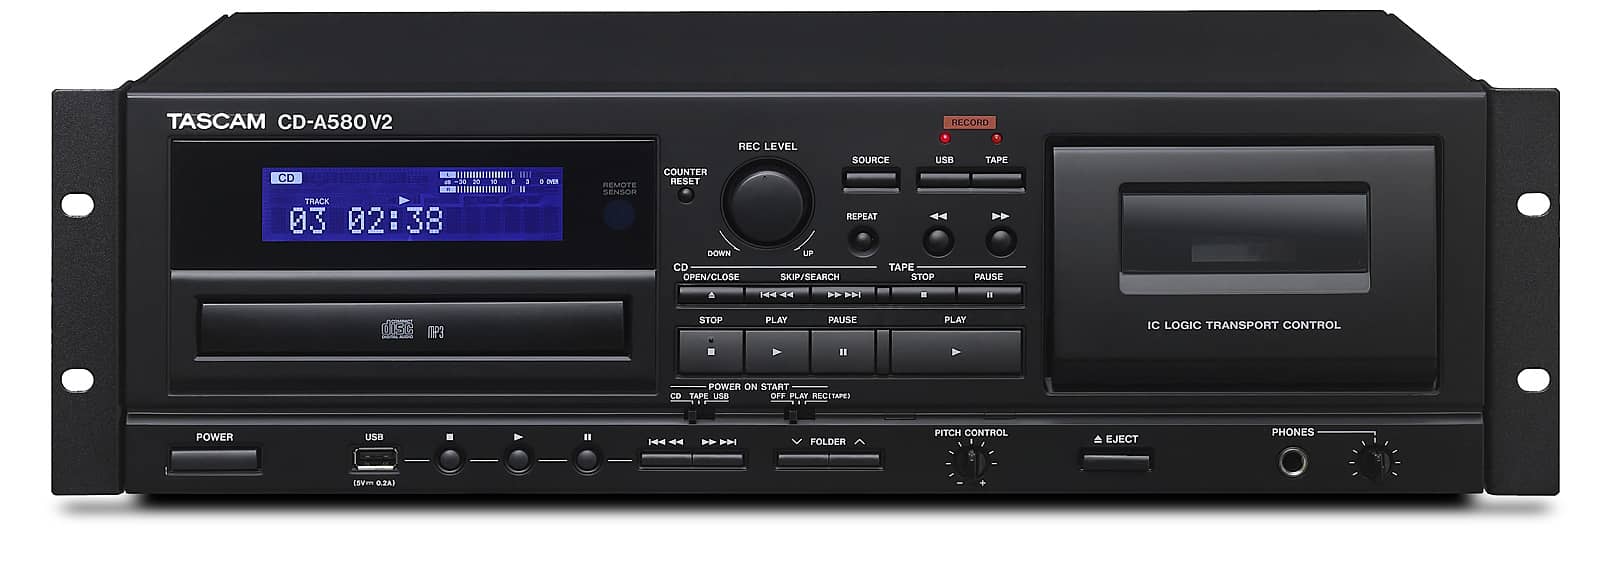 CD Player / Cassette Deck / USB Recorder | Tascam CD-A580 v2